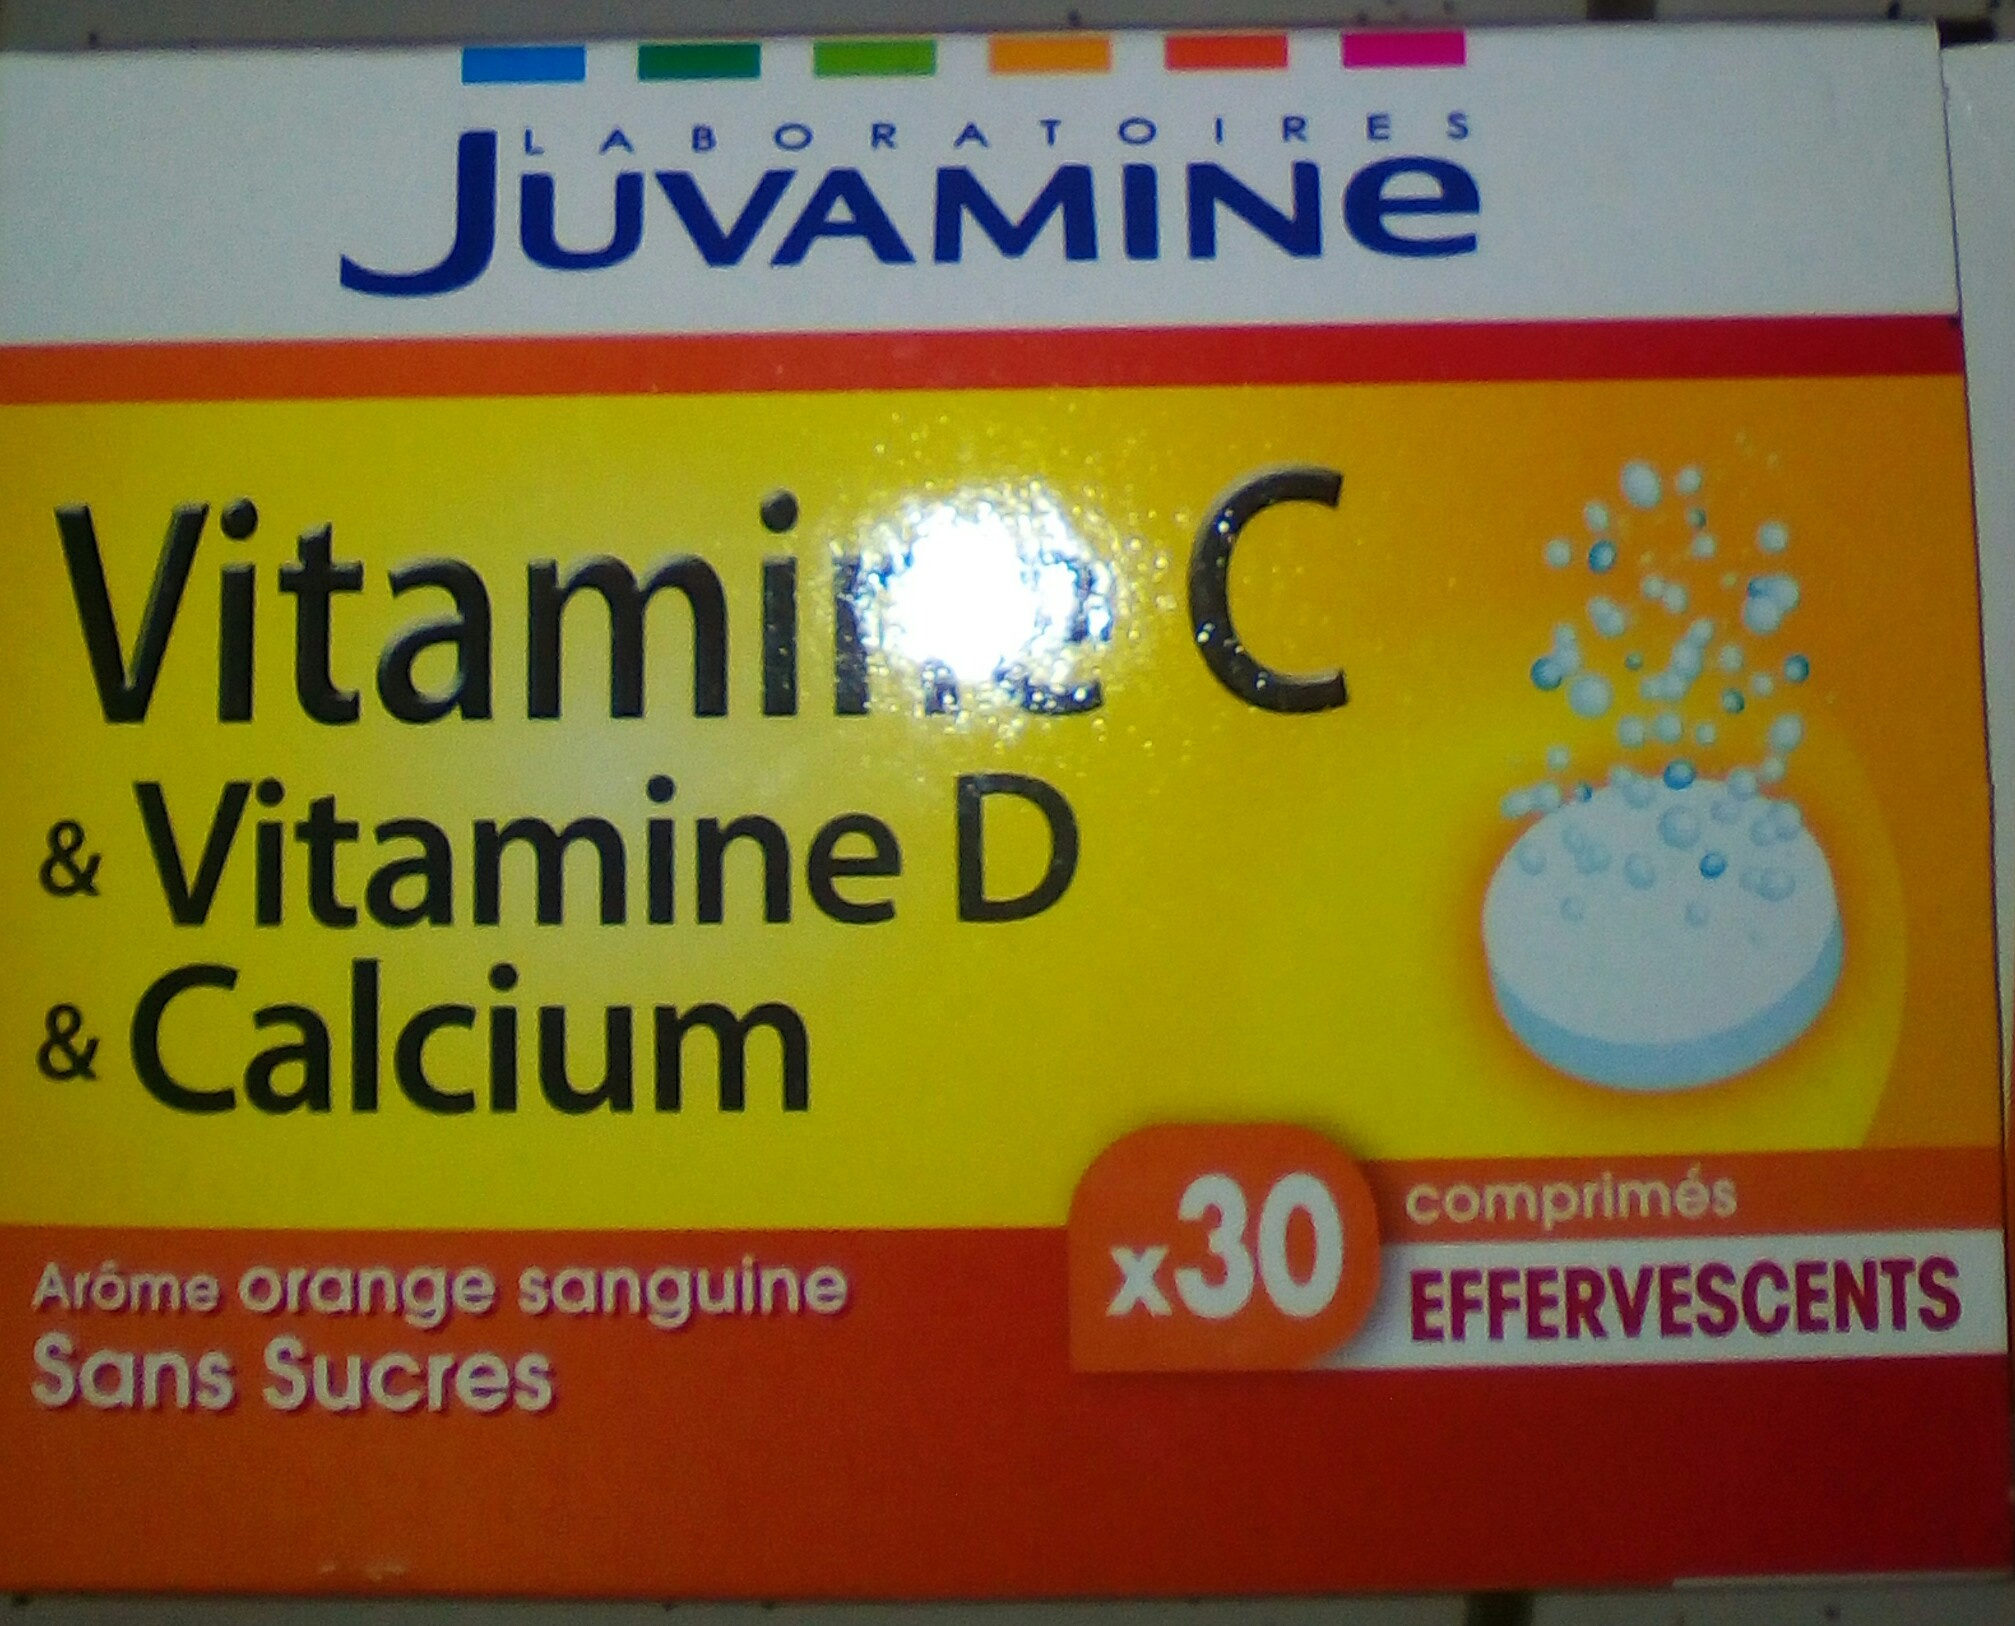 De volgende Agressief weduwnaar Vitamine C & Vitamine D & Calcium - juvamine - 30 comprimés